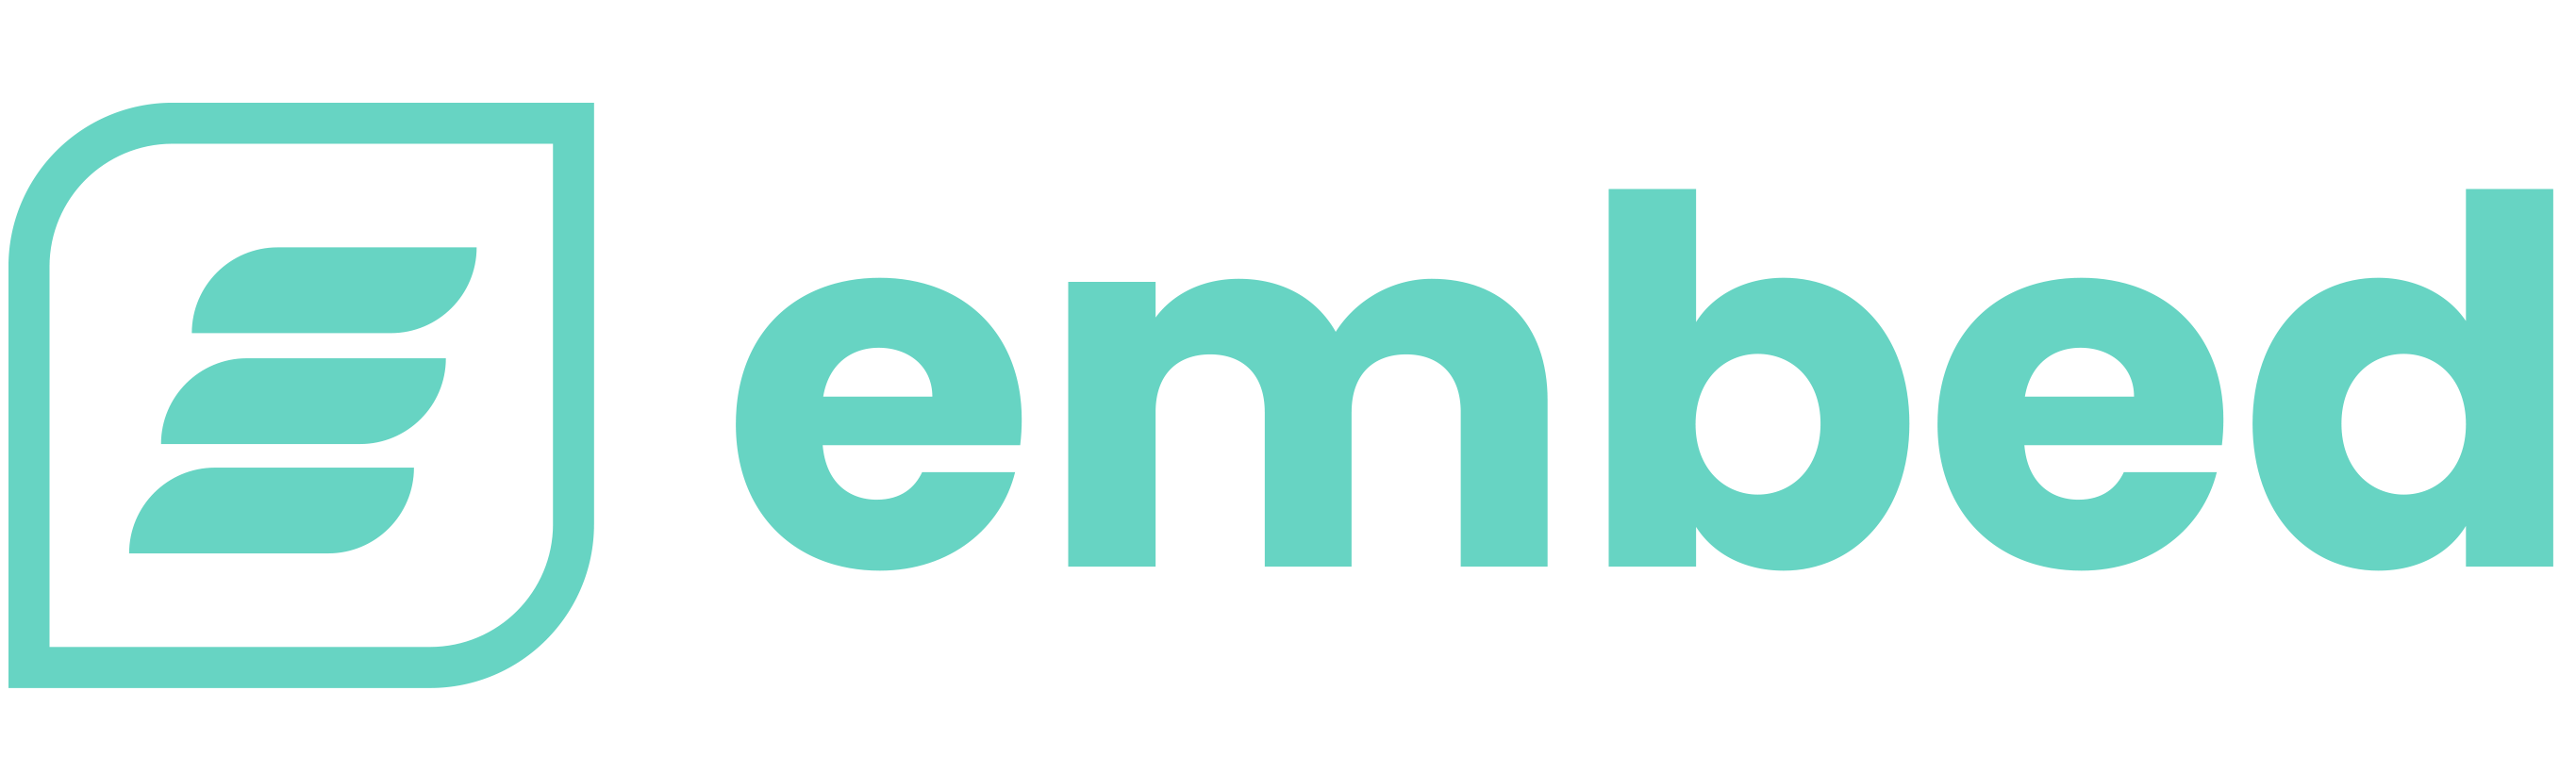 Embed Signage logo